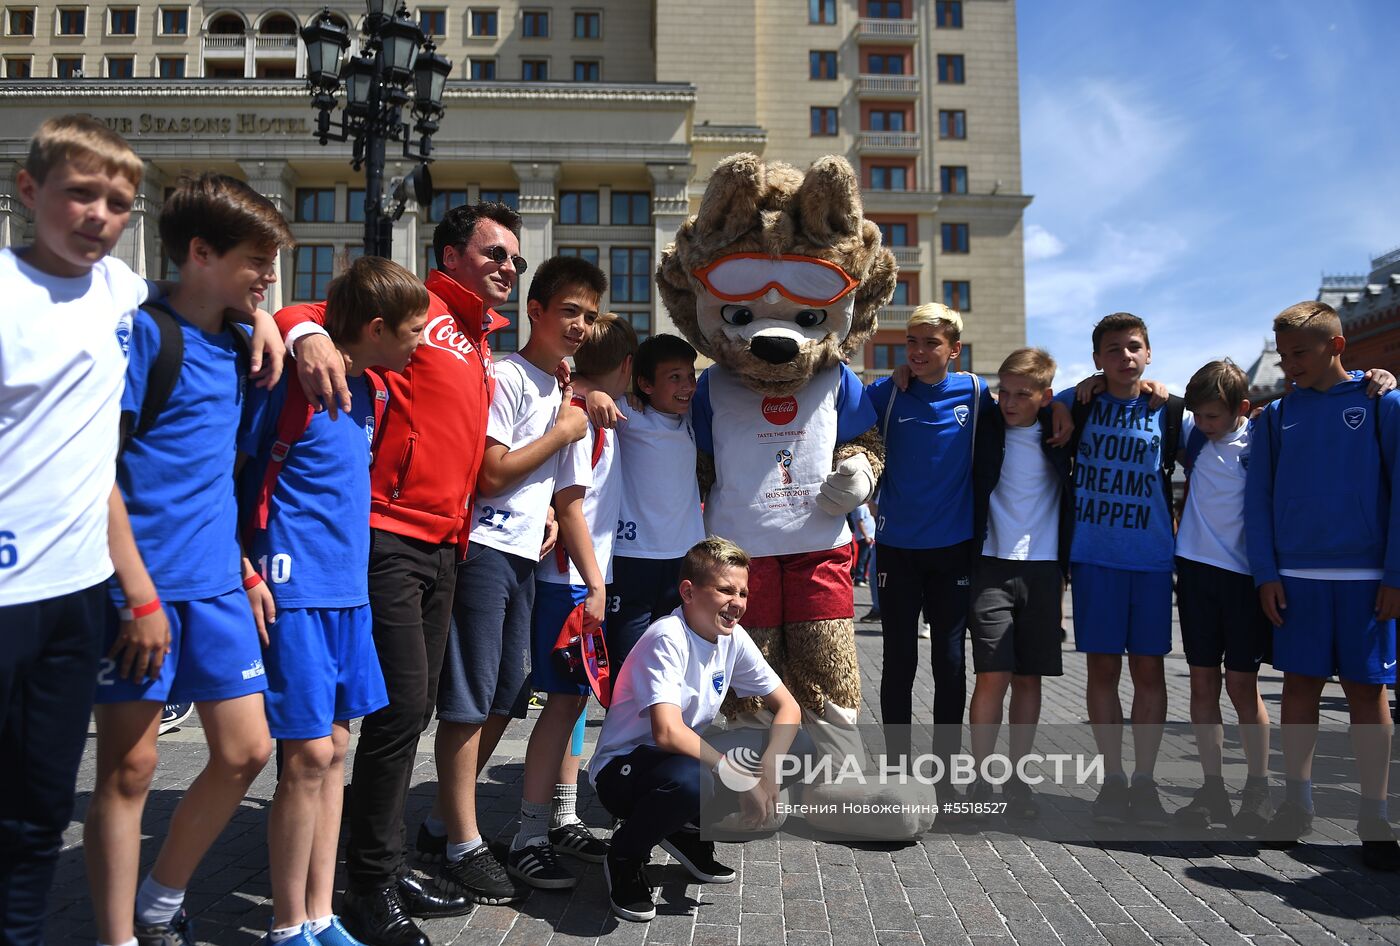 Встреча Кубка ЧМ-2018 по футболу в Москве